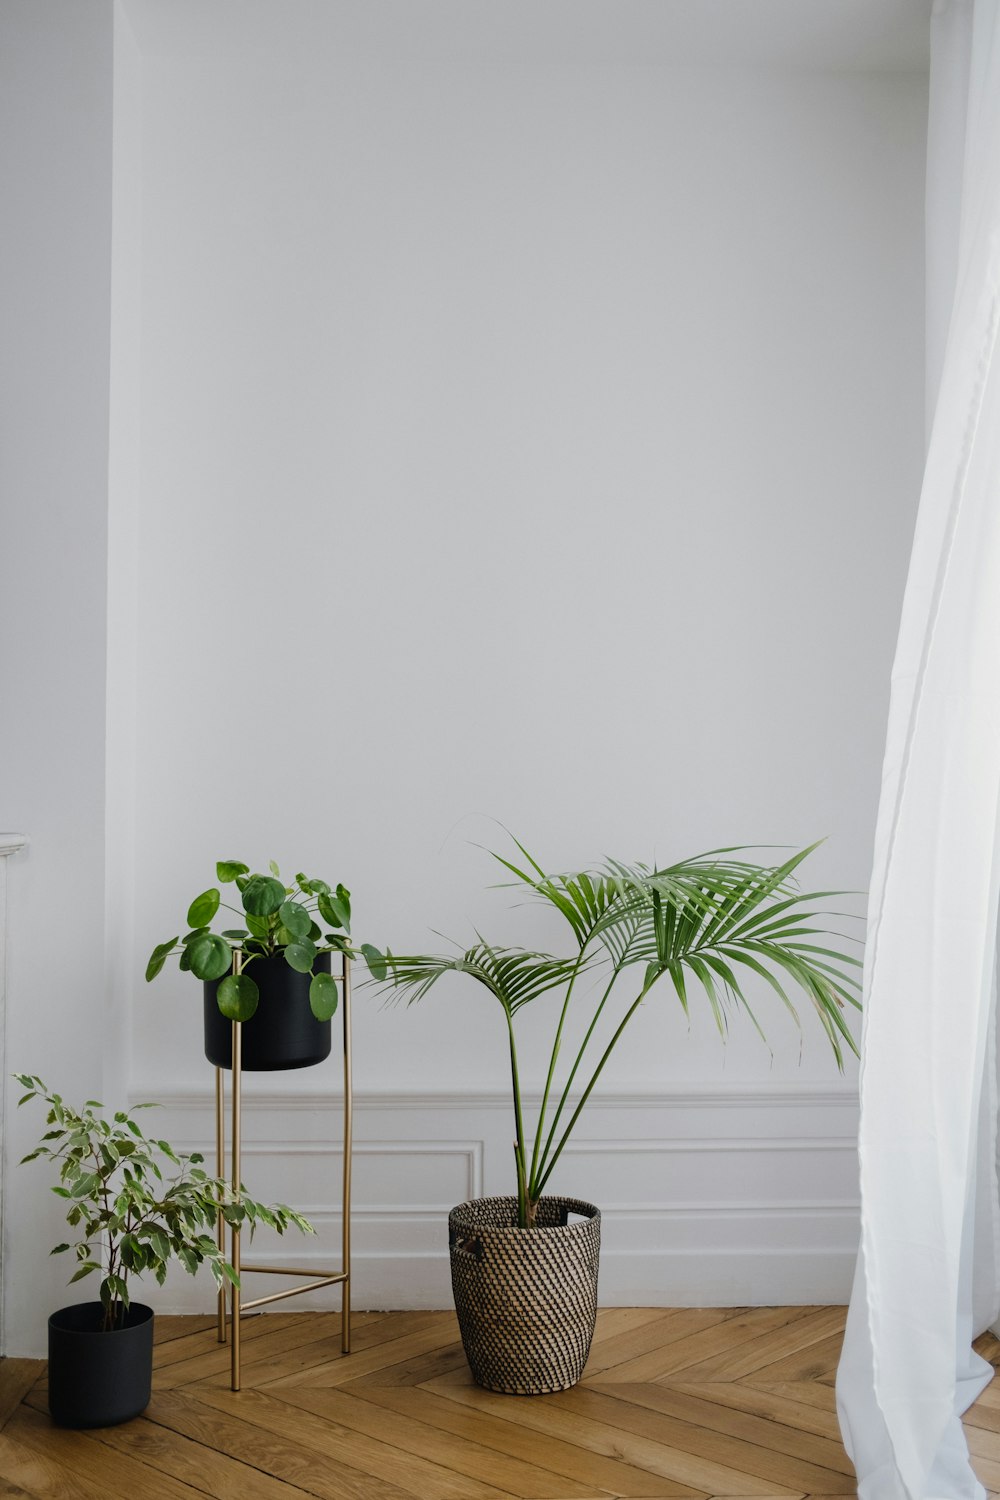 Planta en maceta verde junto a la pared blanca